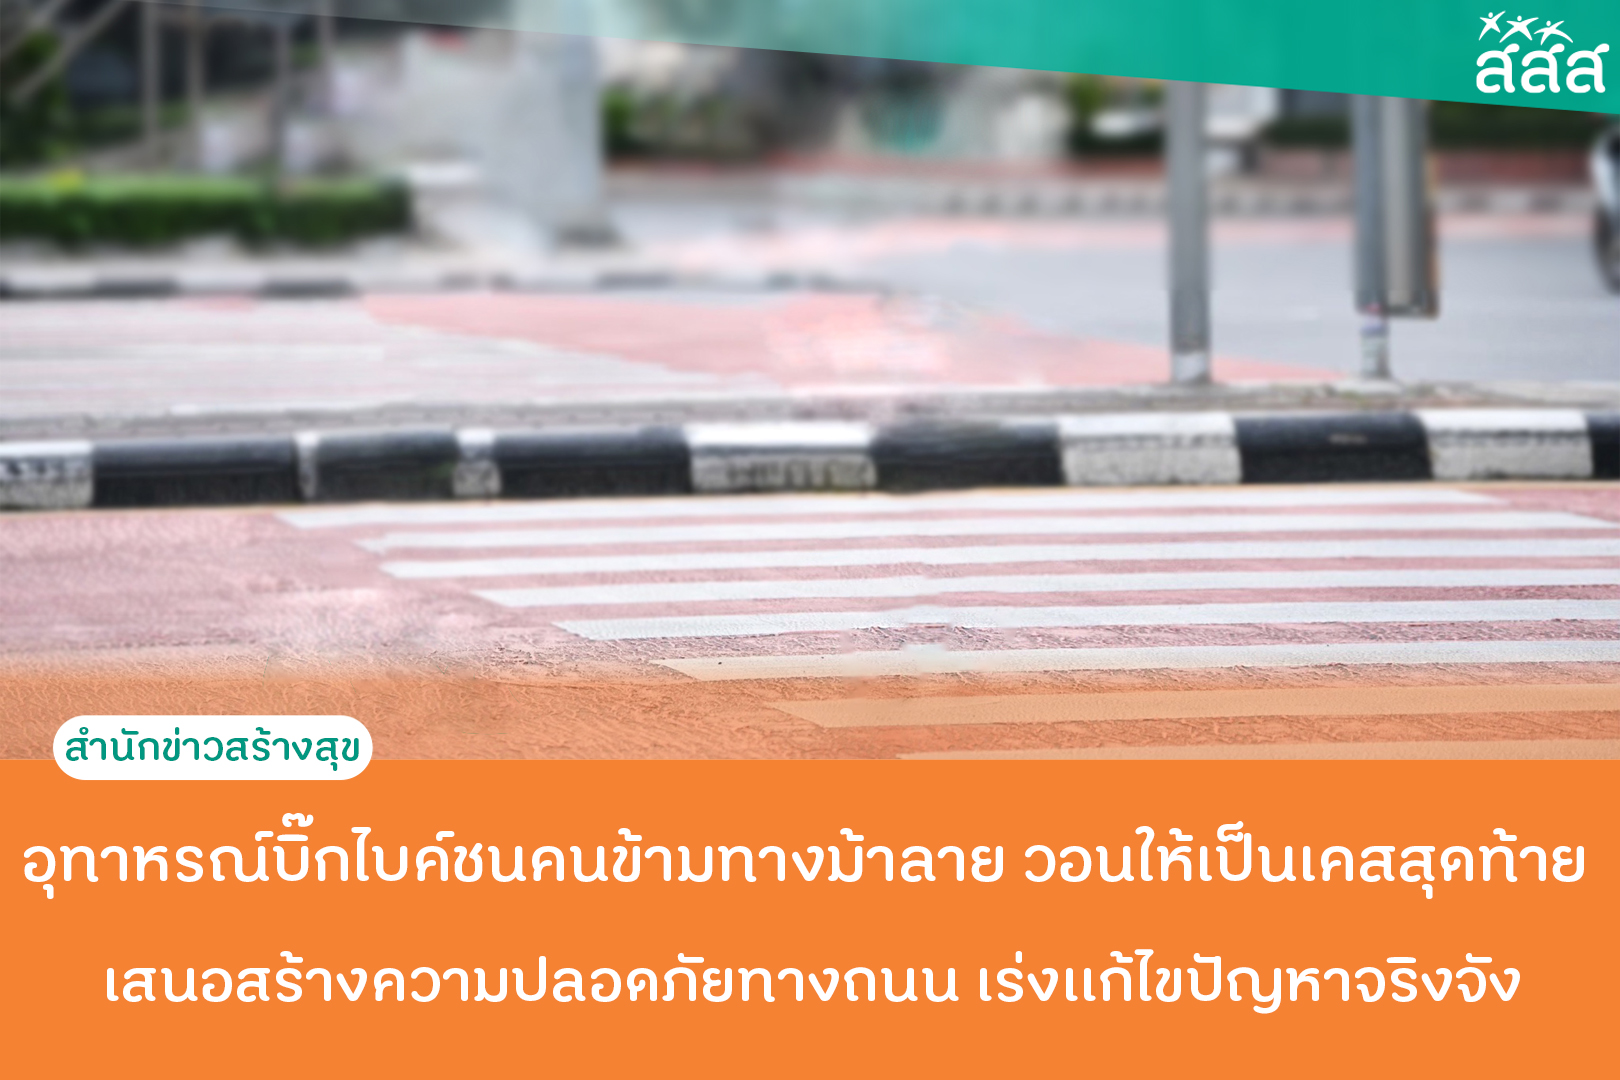 อุทาหรณ์บิ๊กไบค์ชนคนข้ามทางม้าลาย วอนให้เป็นเคสสุดท้าย  เสนอสร้างความปลอดภัยทางถนน เร่งเเก้ไขปัญหาจริงจัง thaihealth